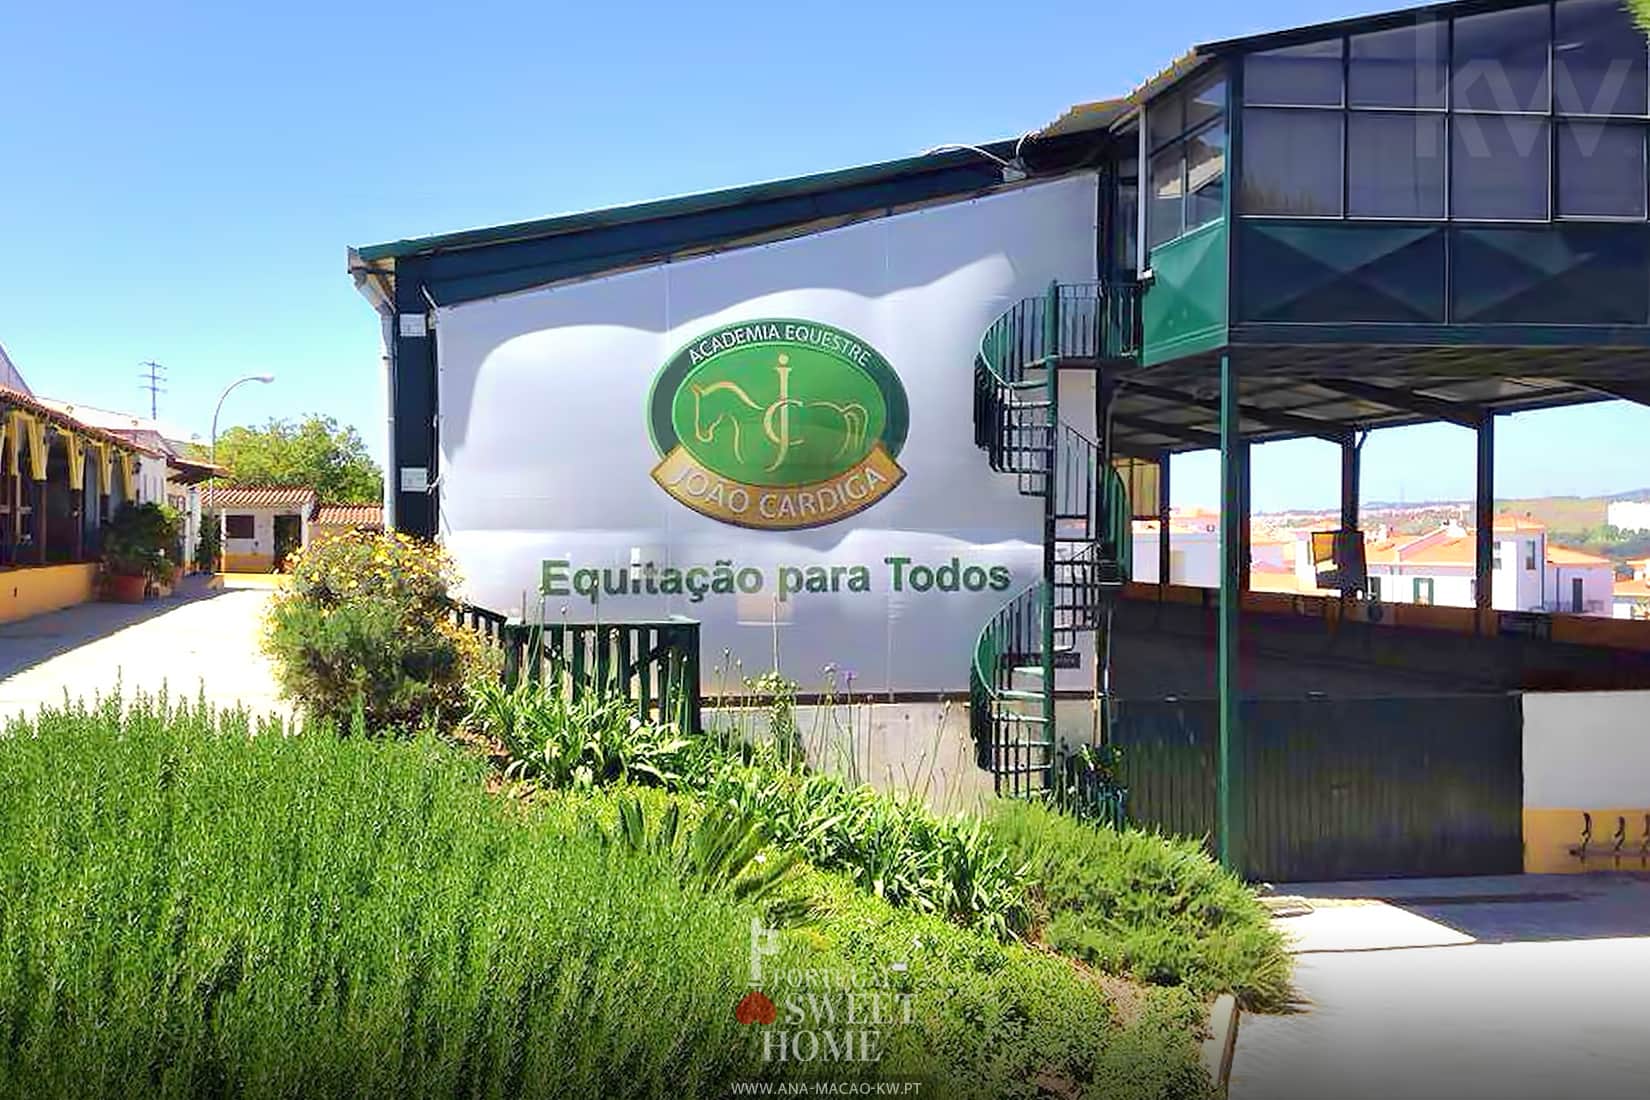 João Cardiga Academy and Equestrian Center